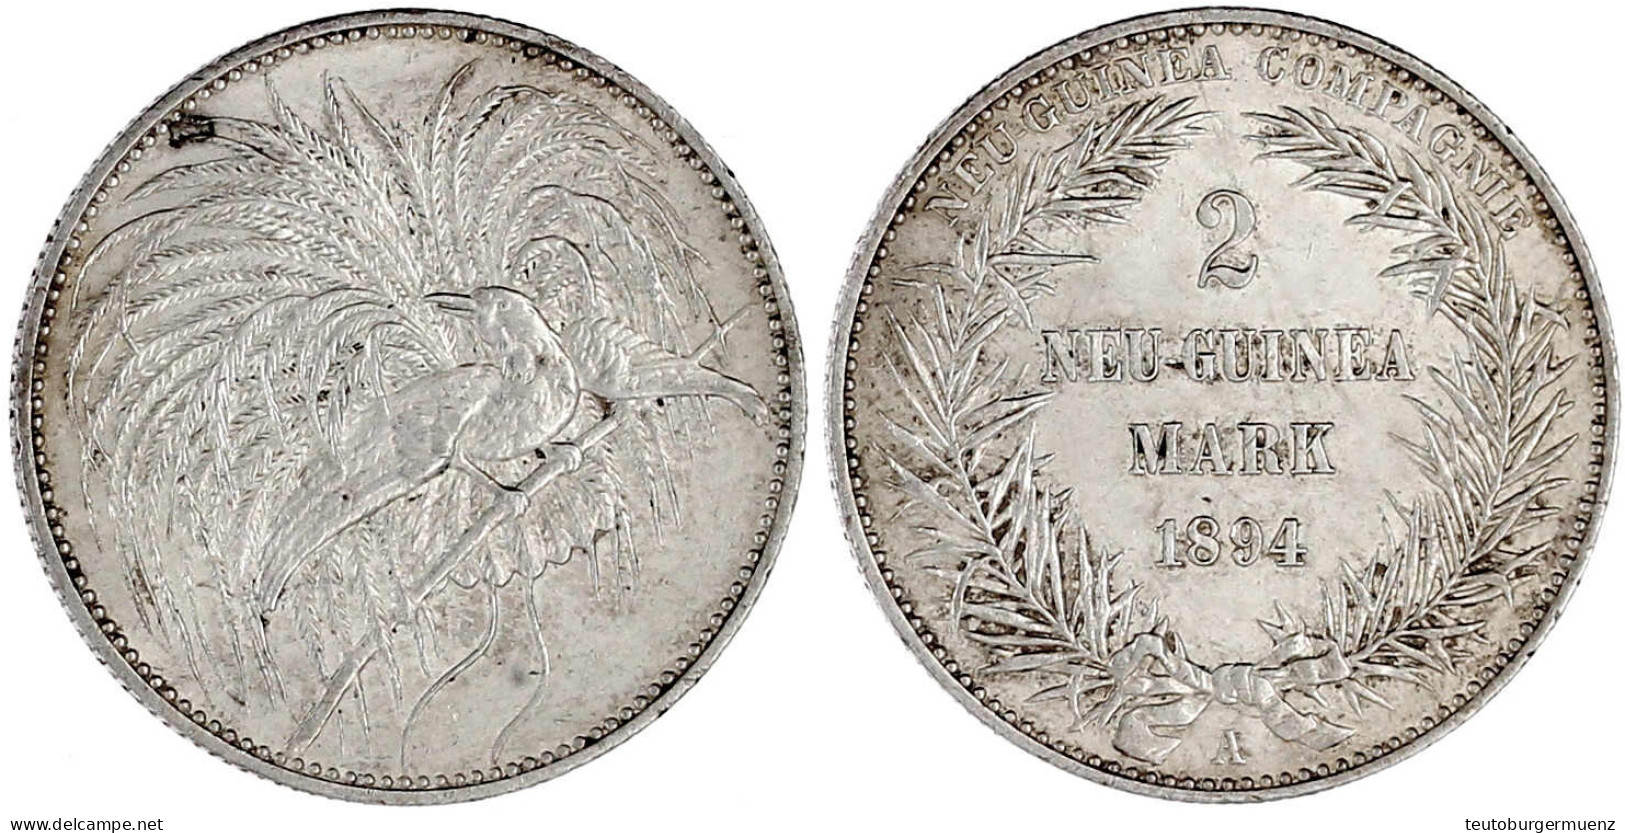 2 Neuguinea-Mark 1894 A, Paradiesvogel. Vorzüglich/Stempelglanz. Jaeger 706. - Duits Nieuw-Guinea